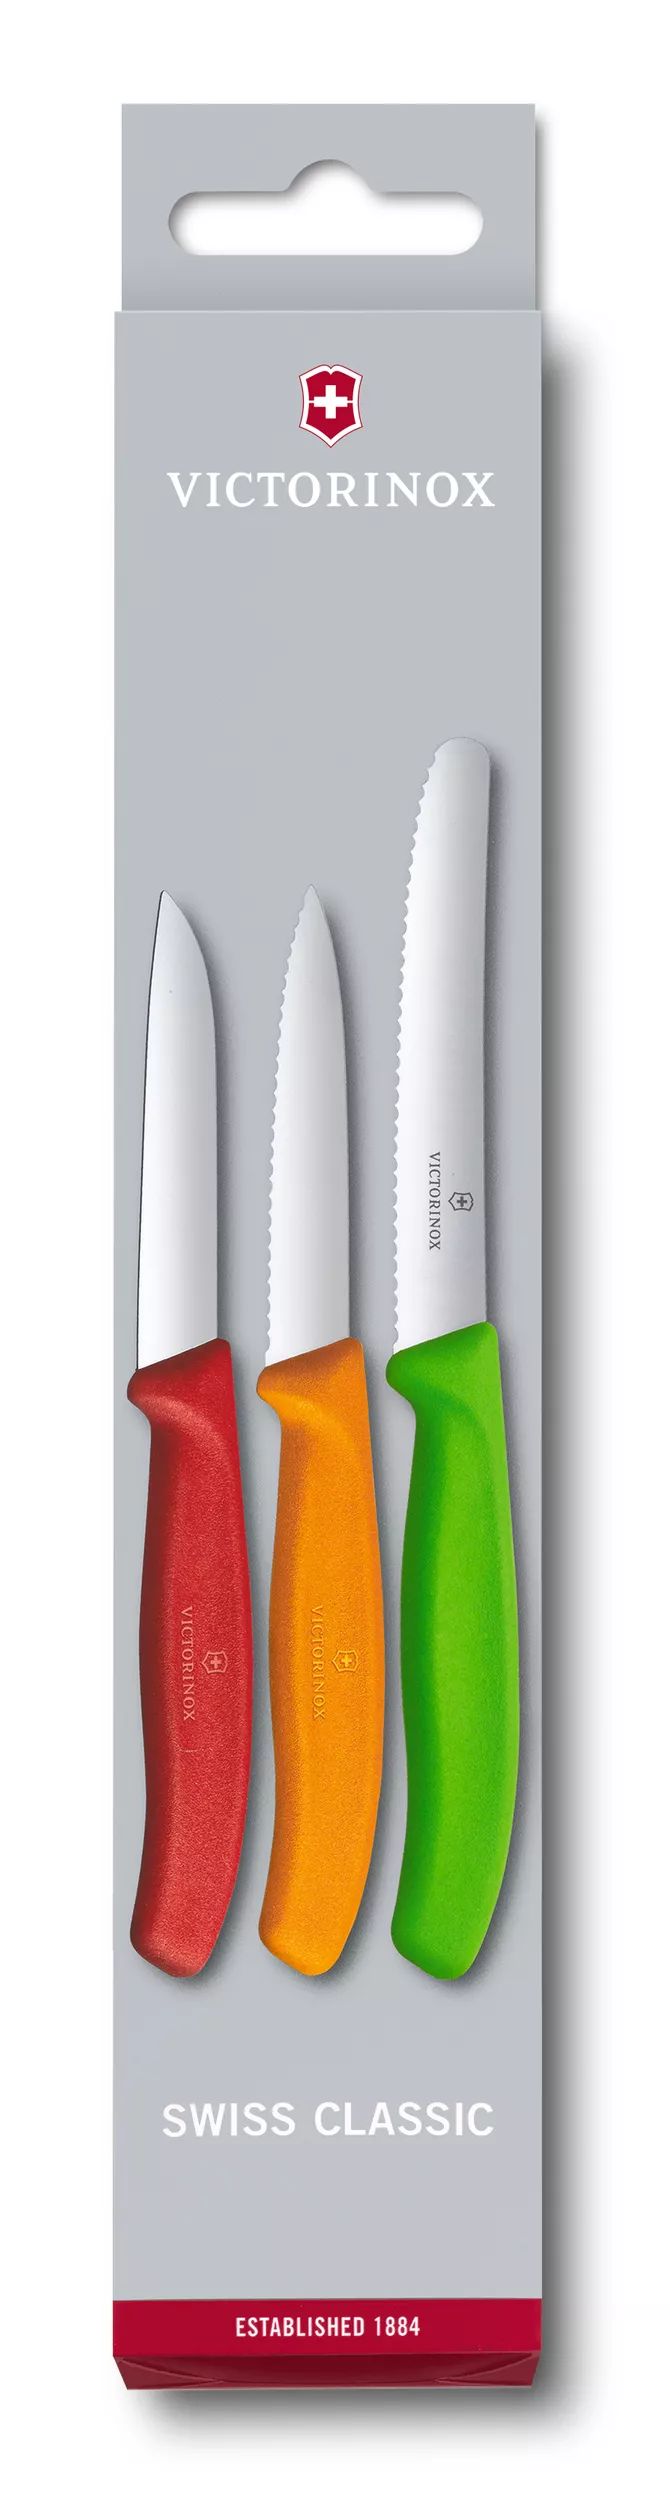 Zestaw noży do warzyw i owoców Swiss Classic, 3 elementy-6.7116.32